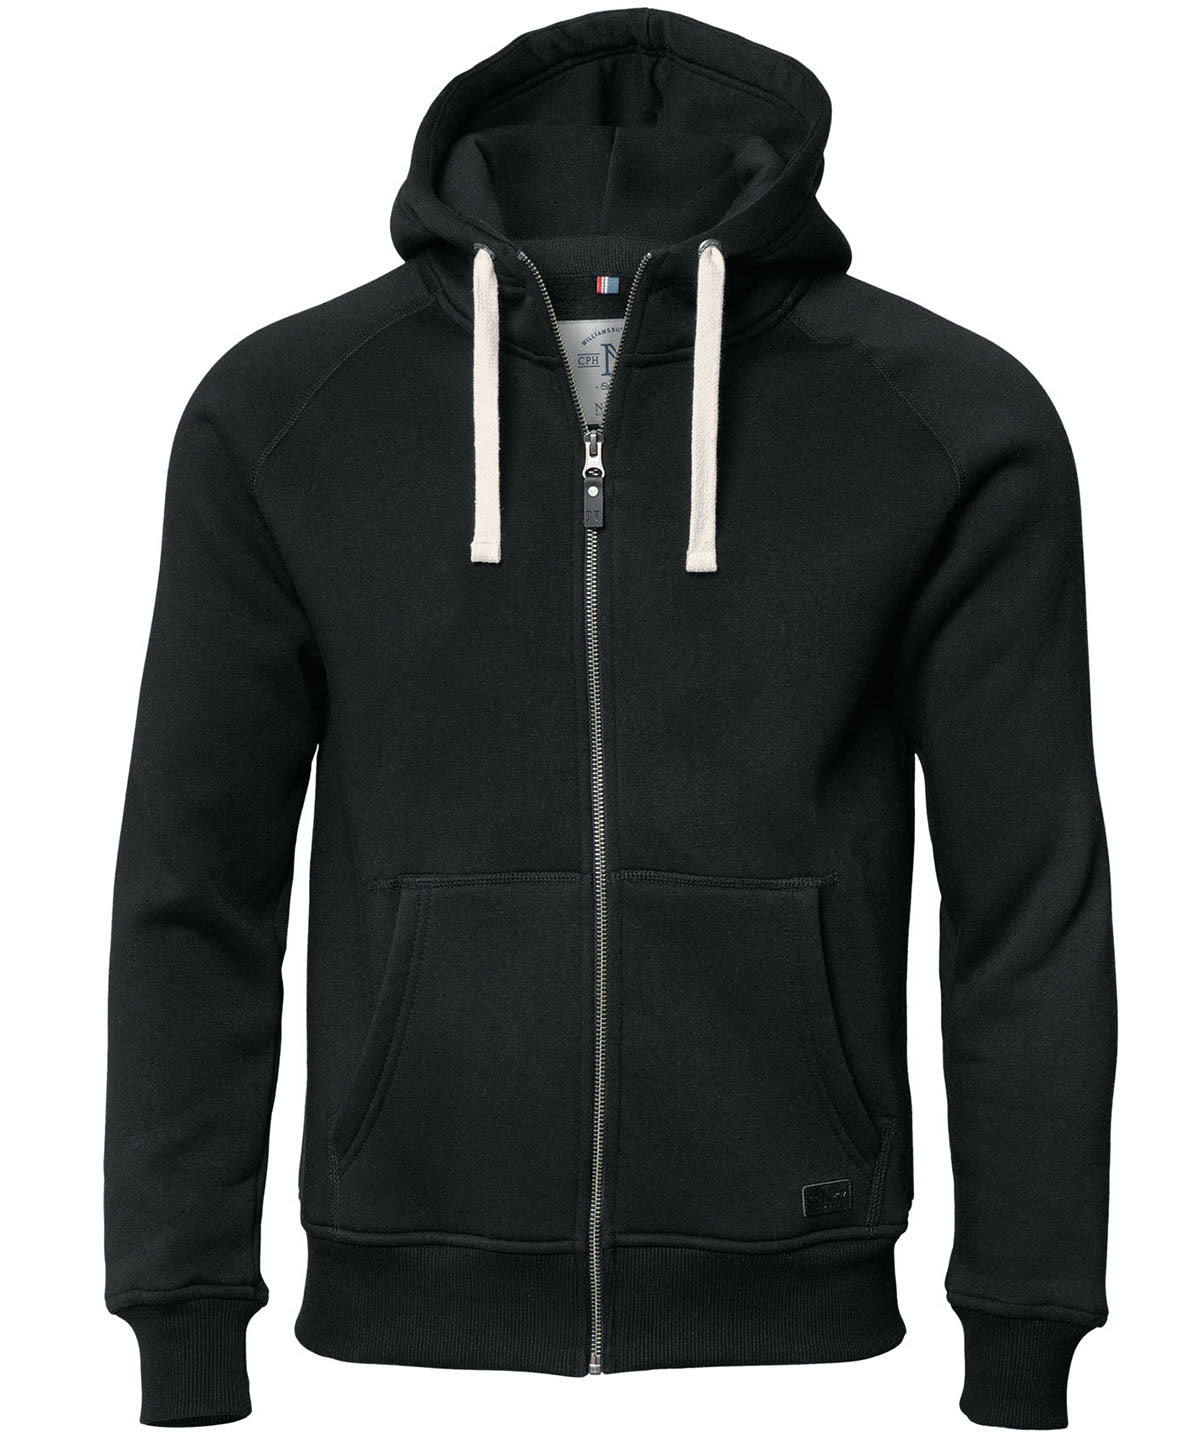 Personalised Hoodies - Black Nimbus Williamsburg – fashionable hooded sweatshirt